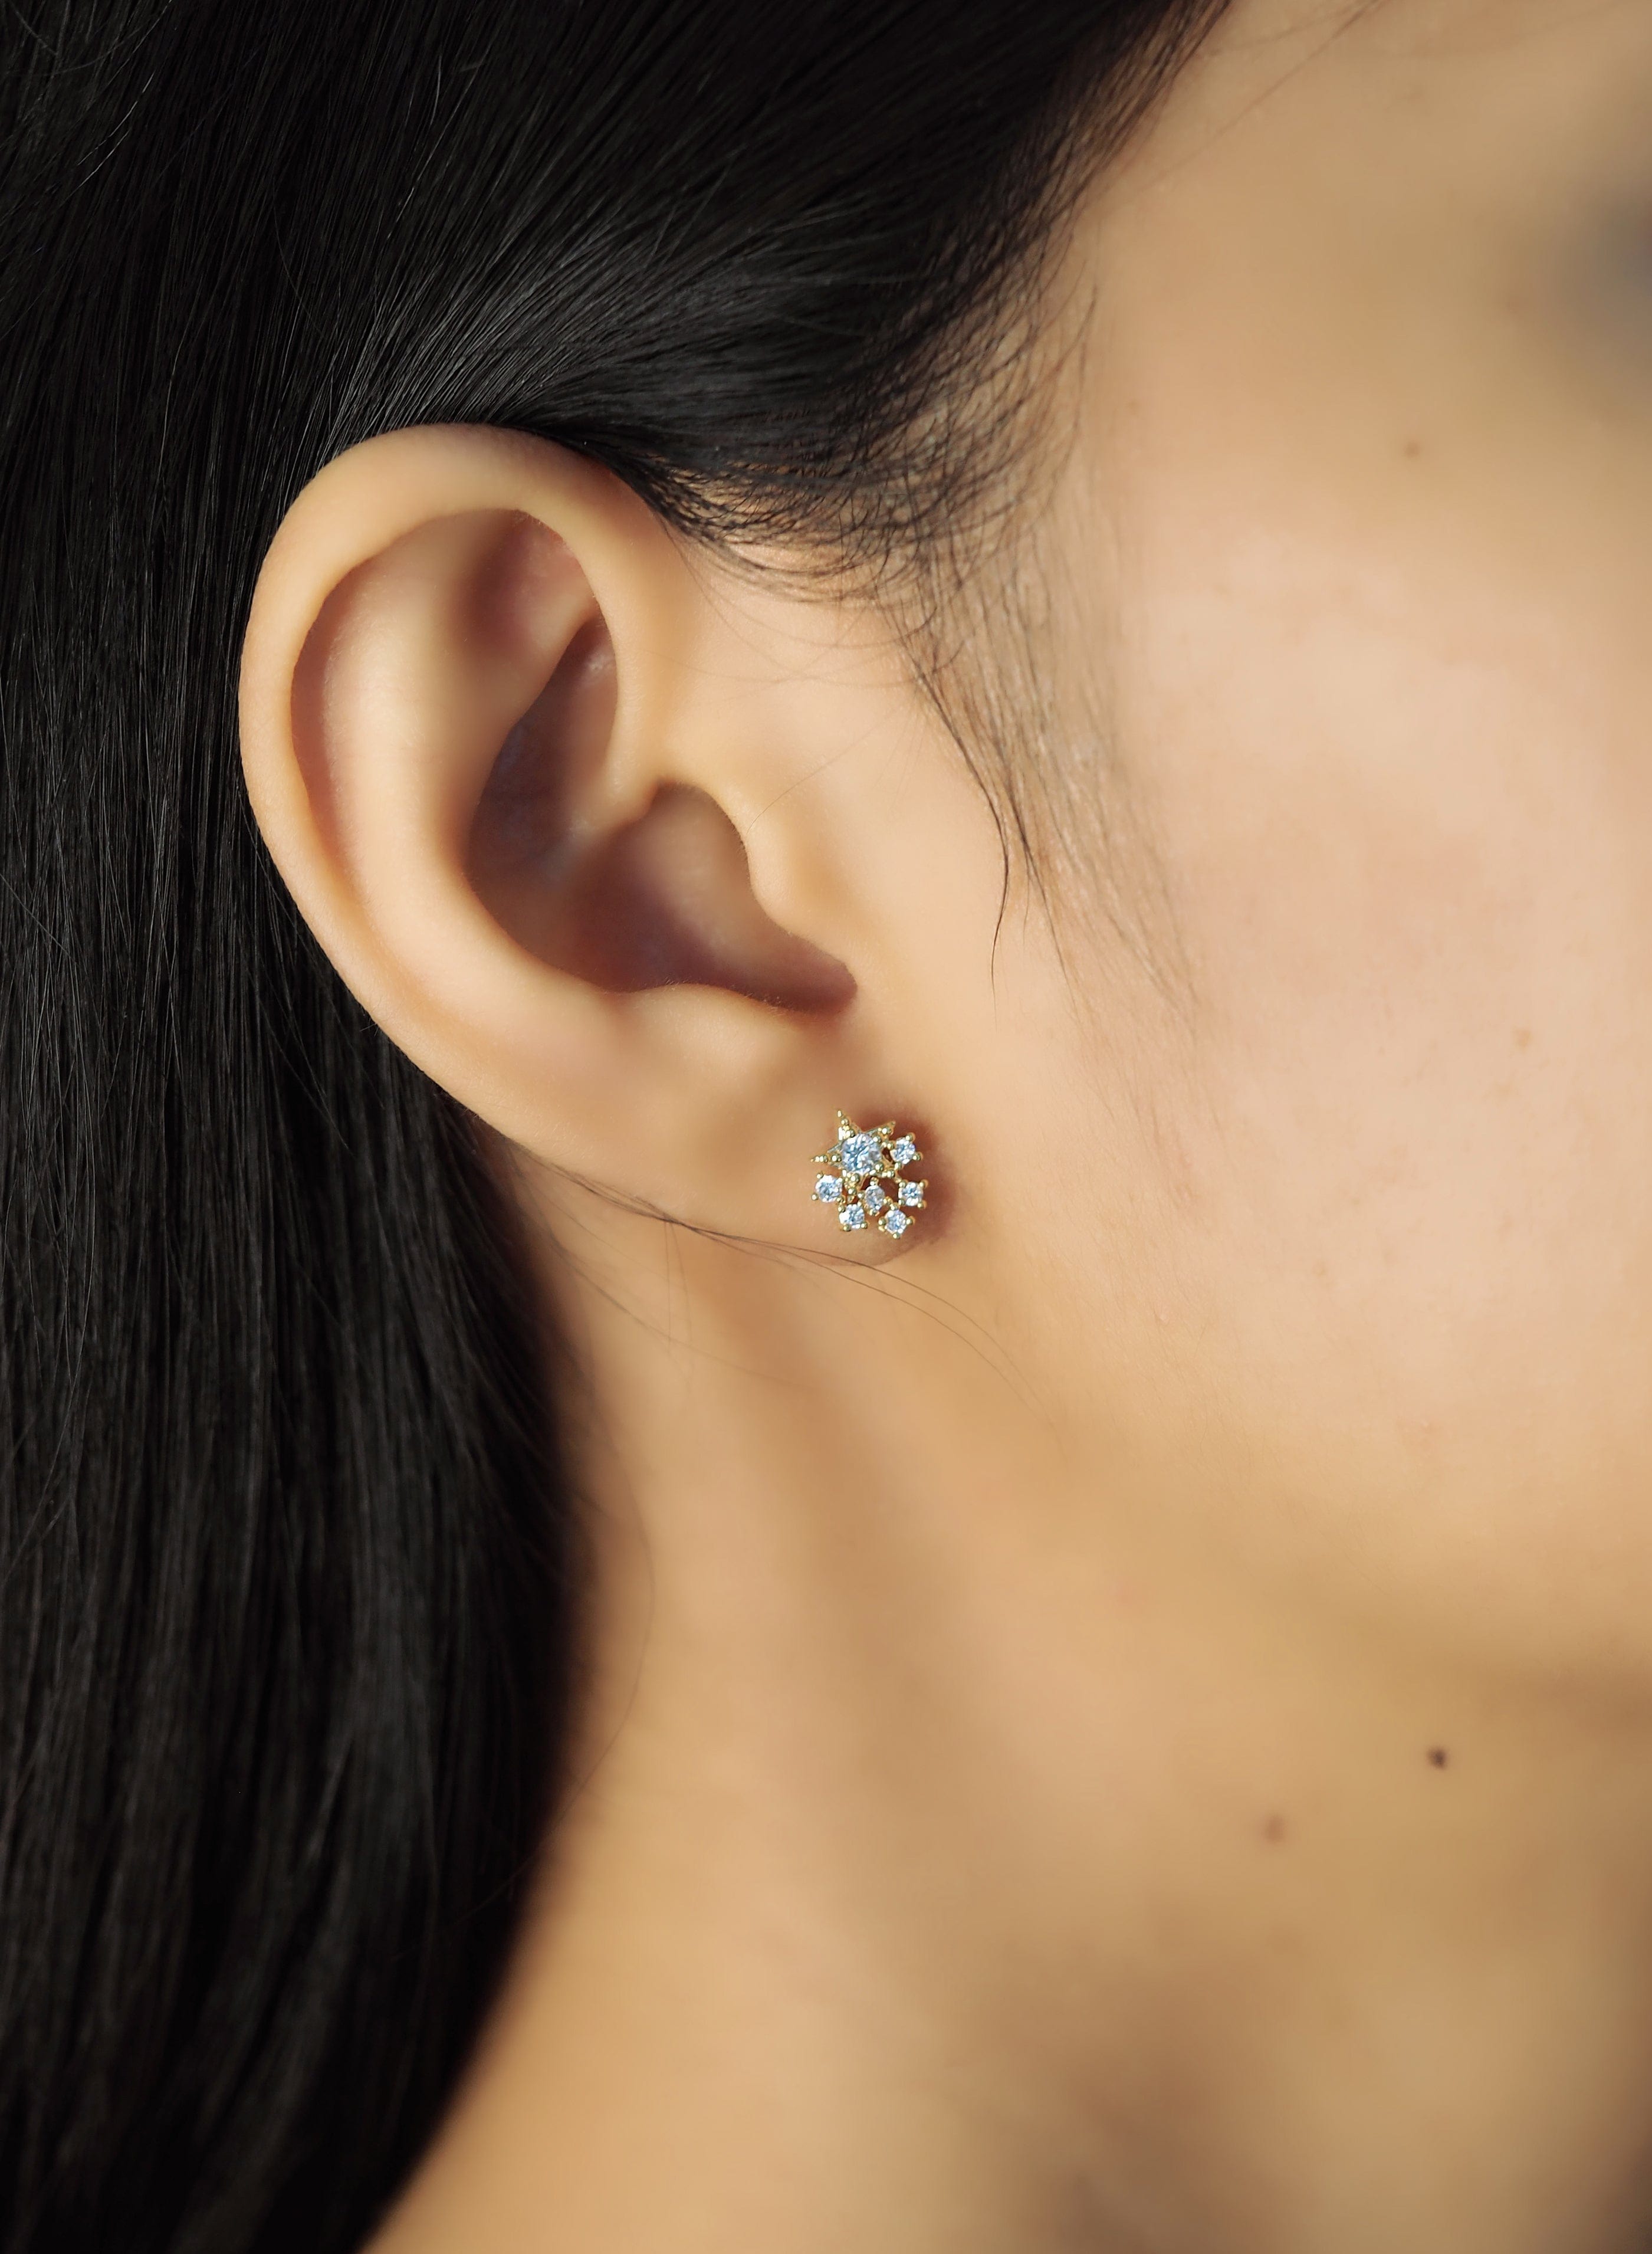 TAI JEWELRY Earrings Stardust Cluster Earrings